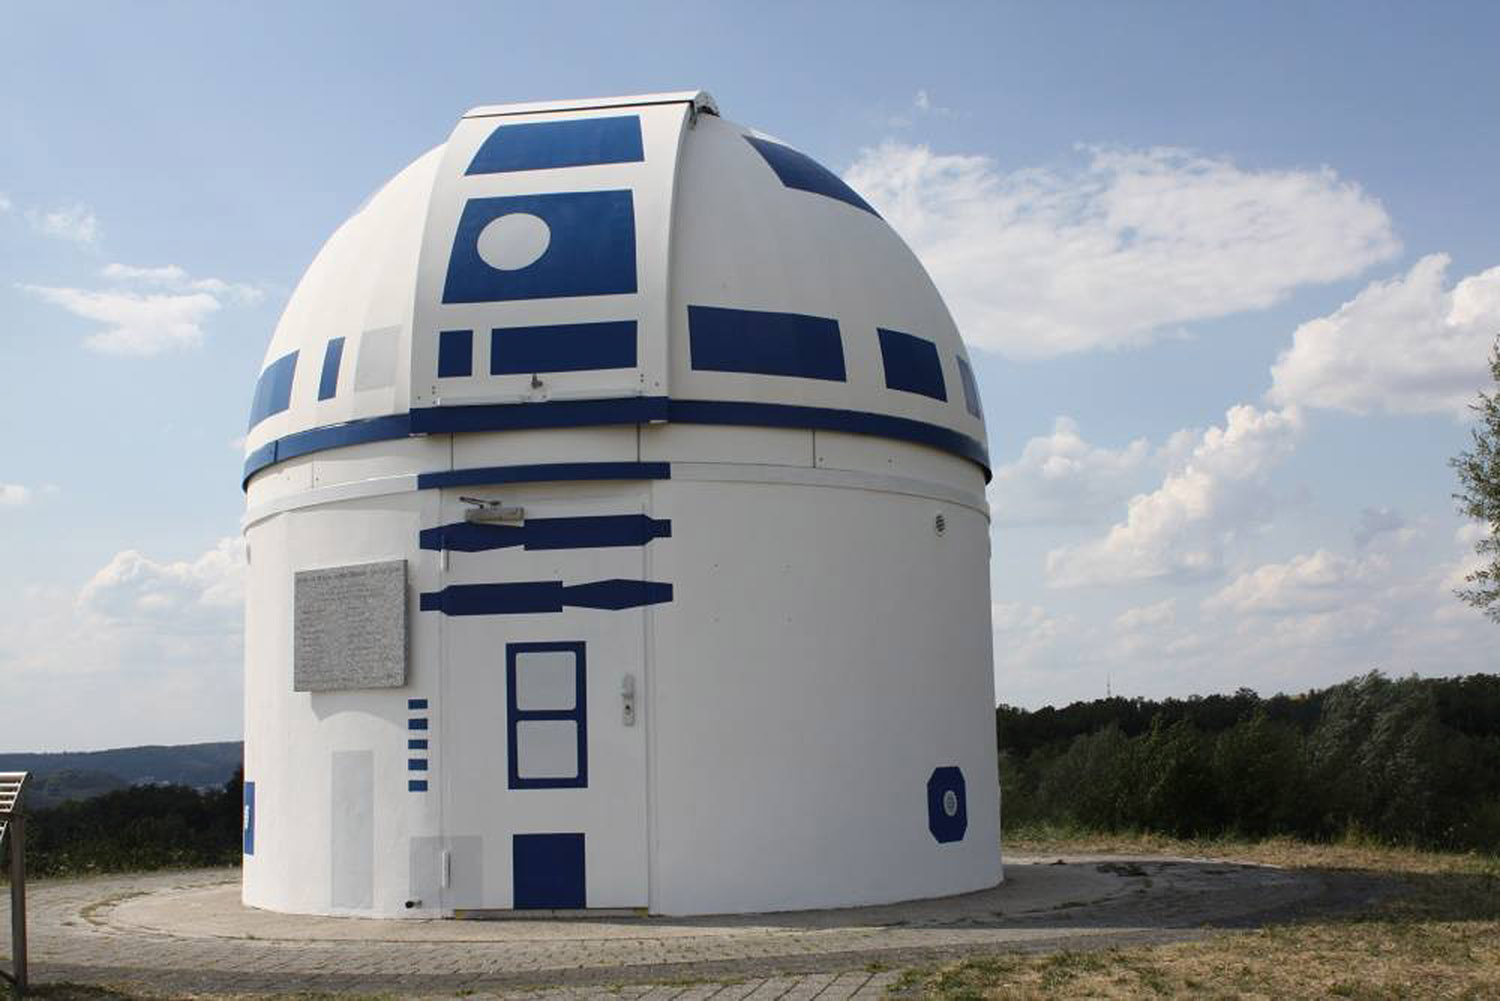 Γερμανία: Το αστεροσκοπείο που θυμίζει Star Wars έγινε viral παγκοσμίως